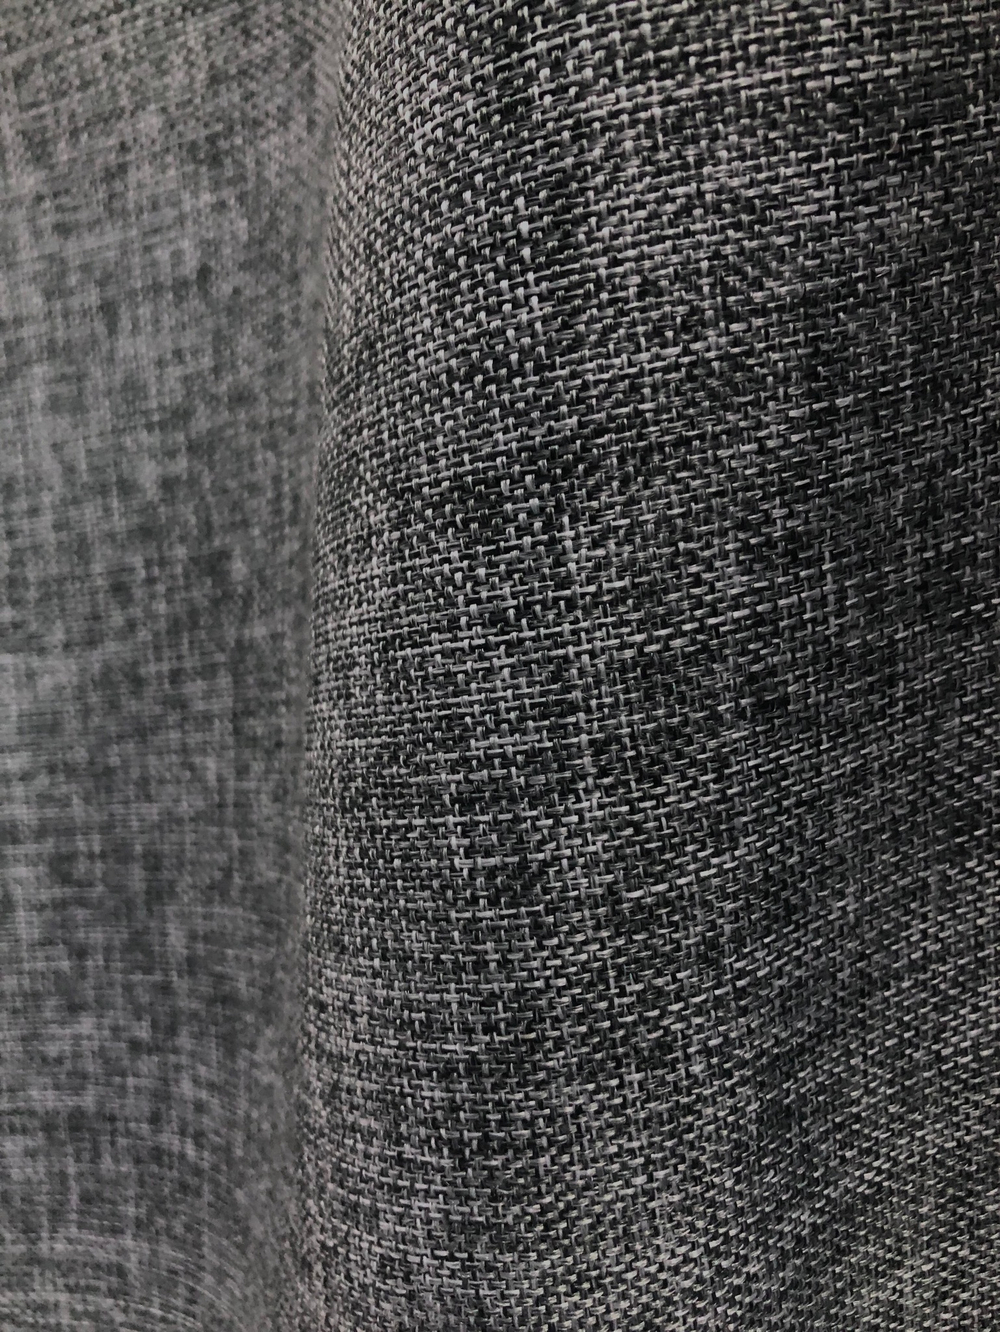 Ткань Лен портьерный купон по низу, цвет серый, артикул 327456